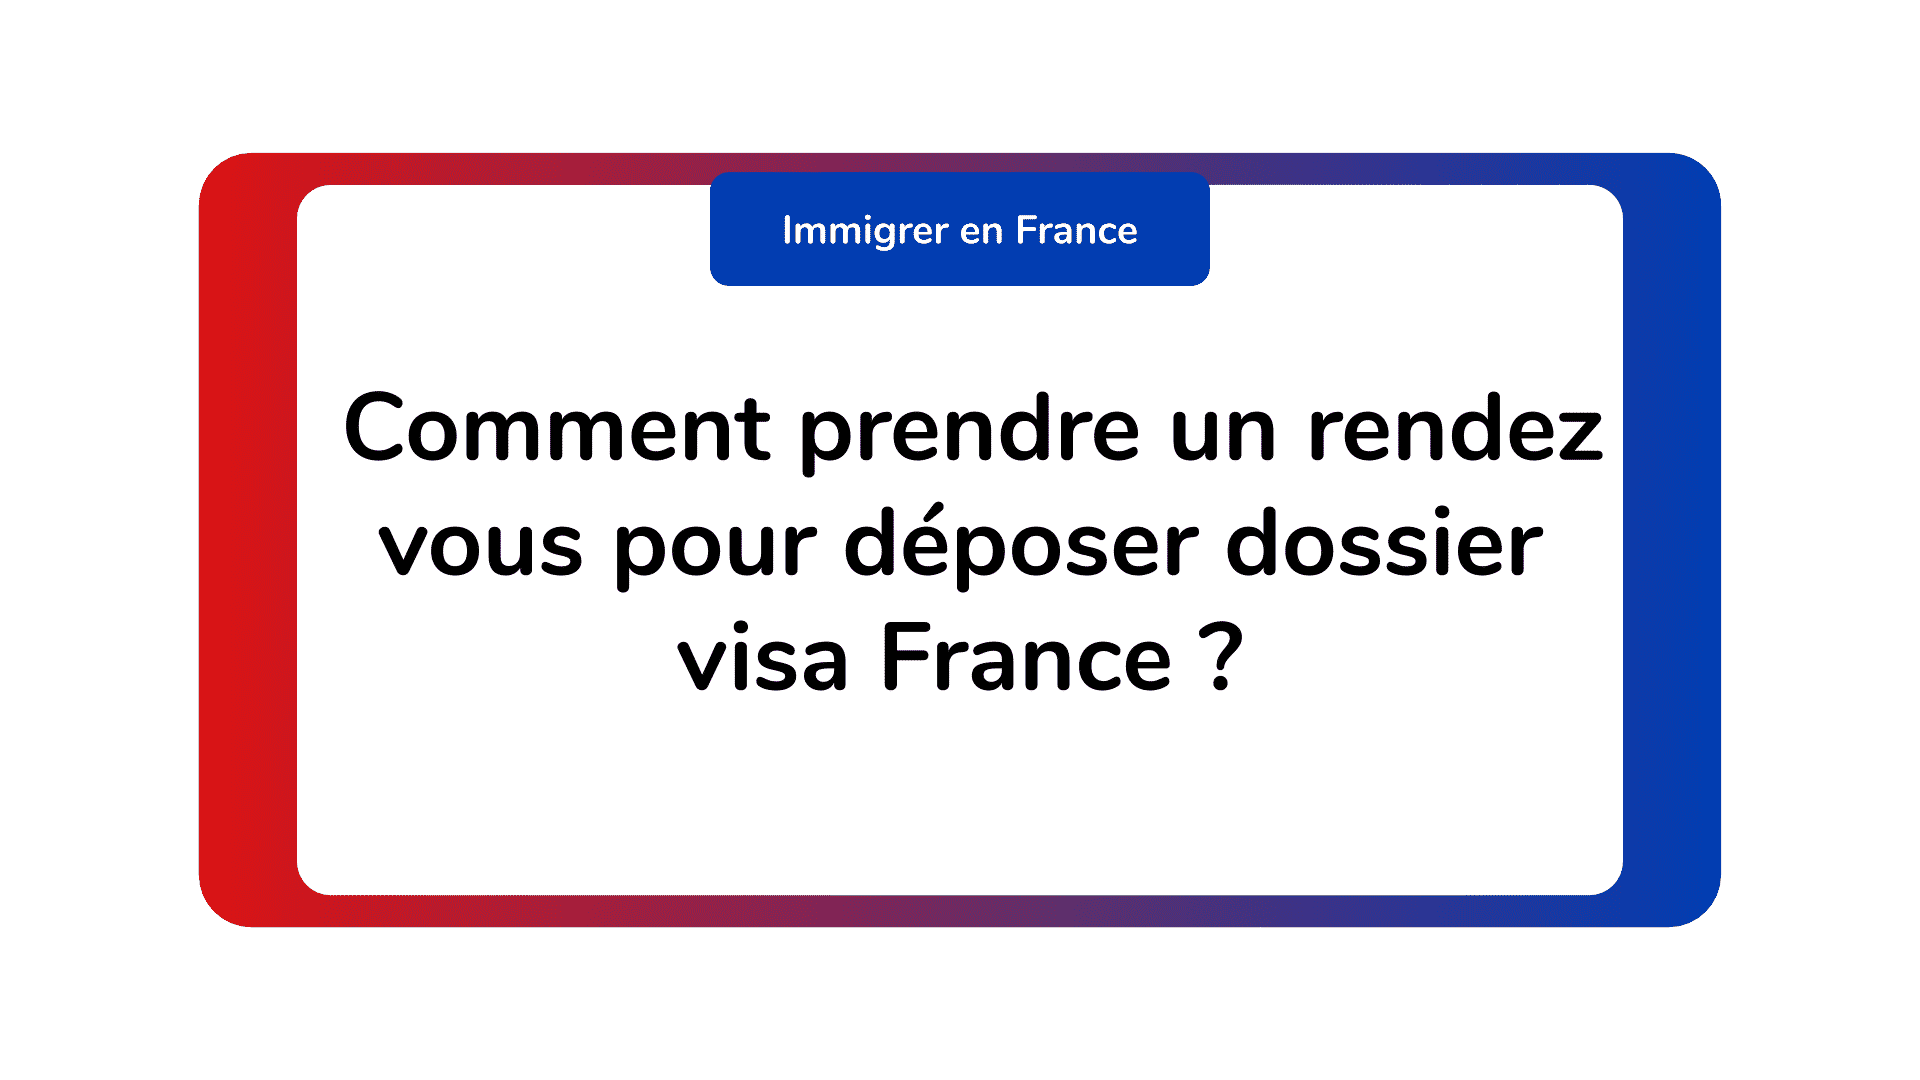 Comment prendre un rendez vous pour déposer dossier visa France ?